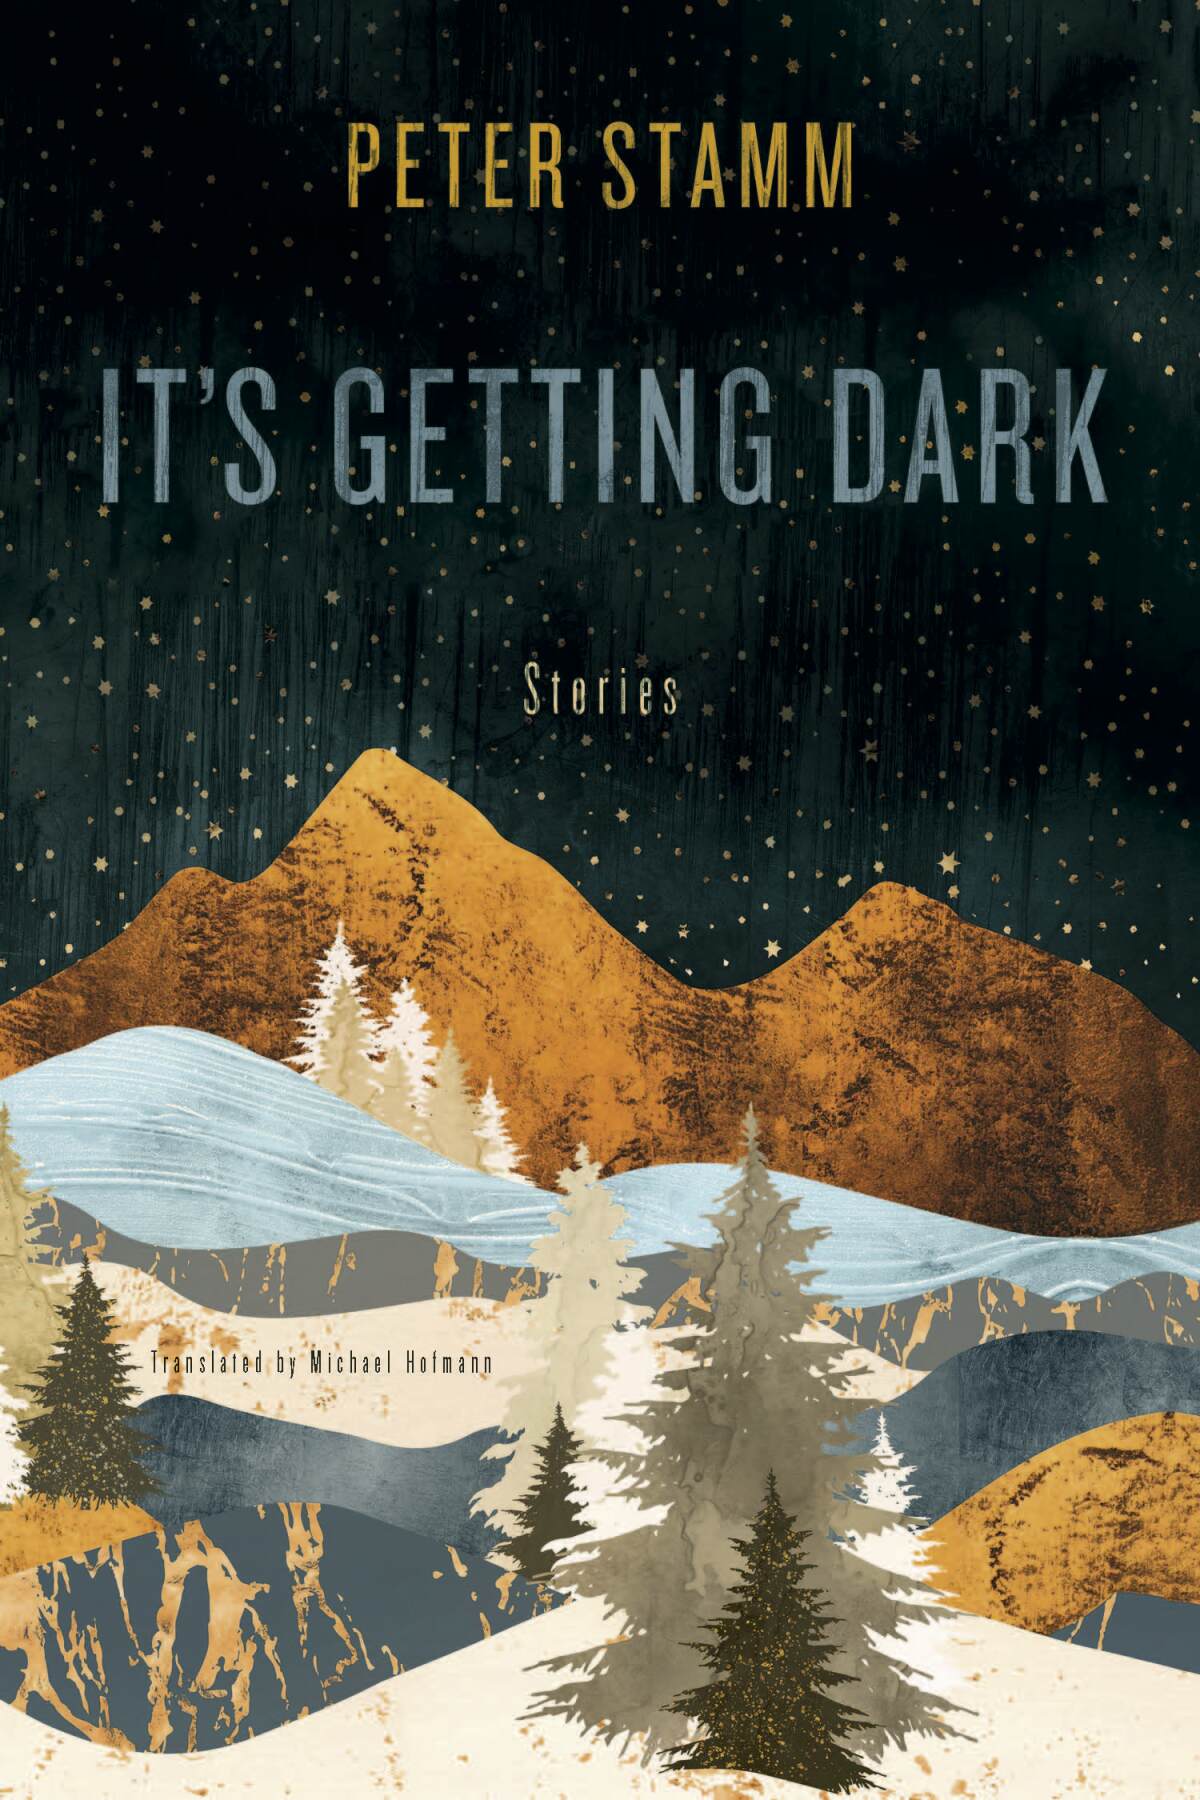 "It's Getting Dark: Stories," by Peter Stamm